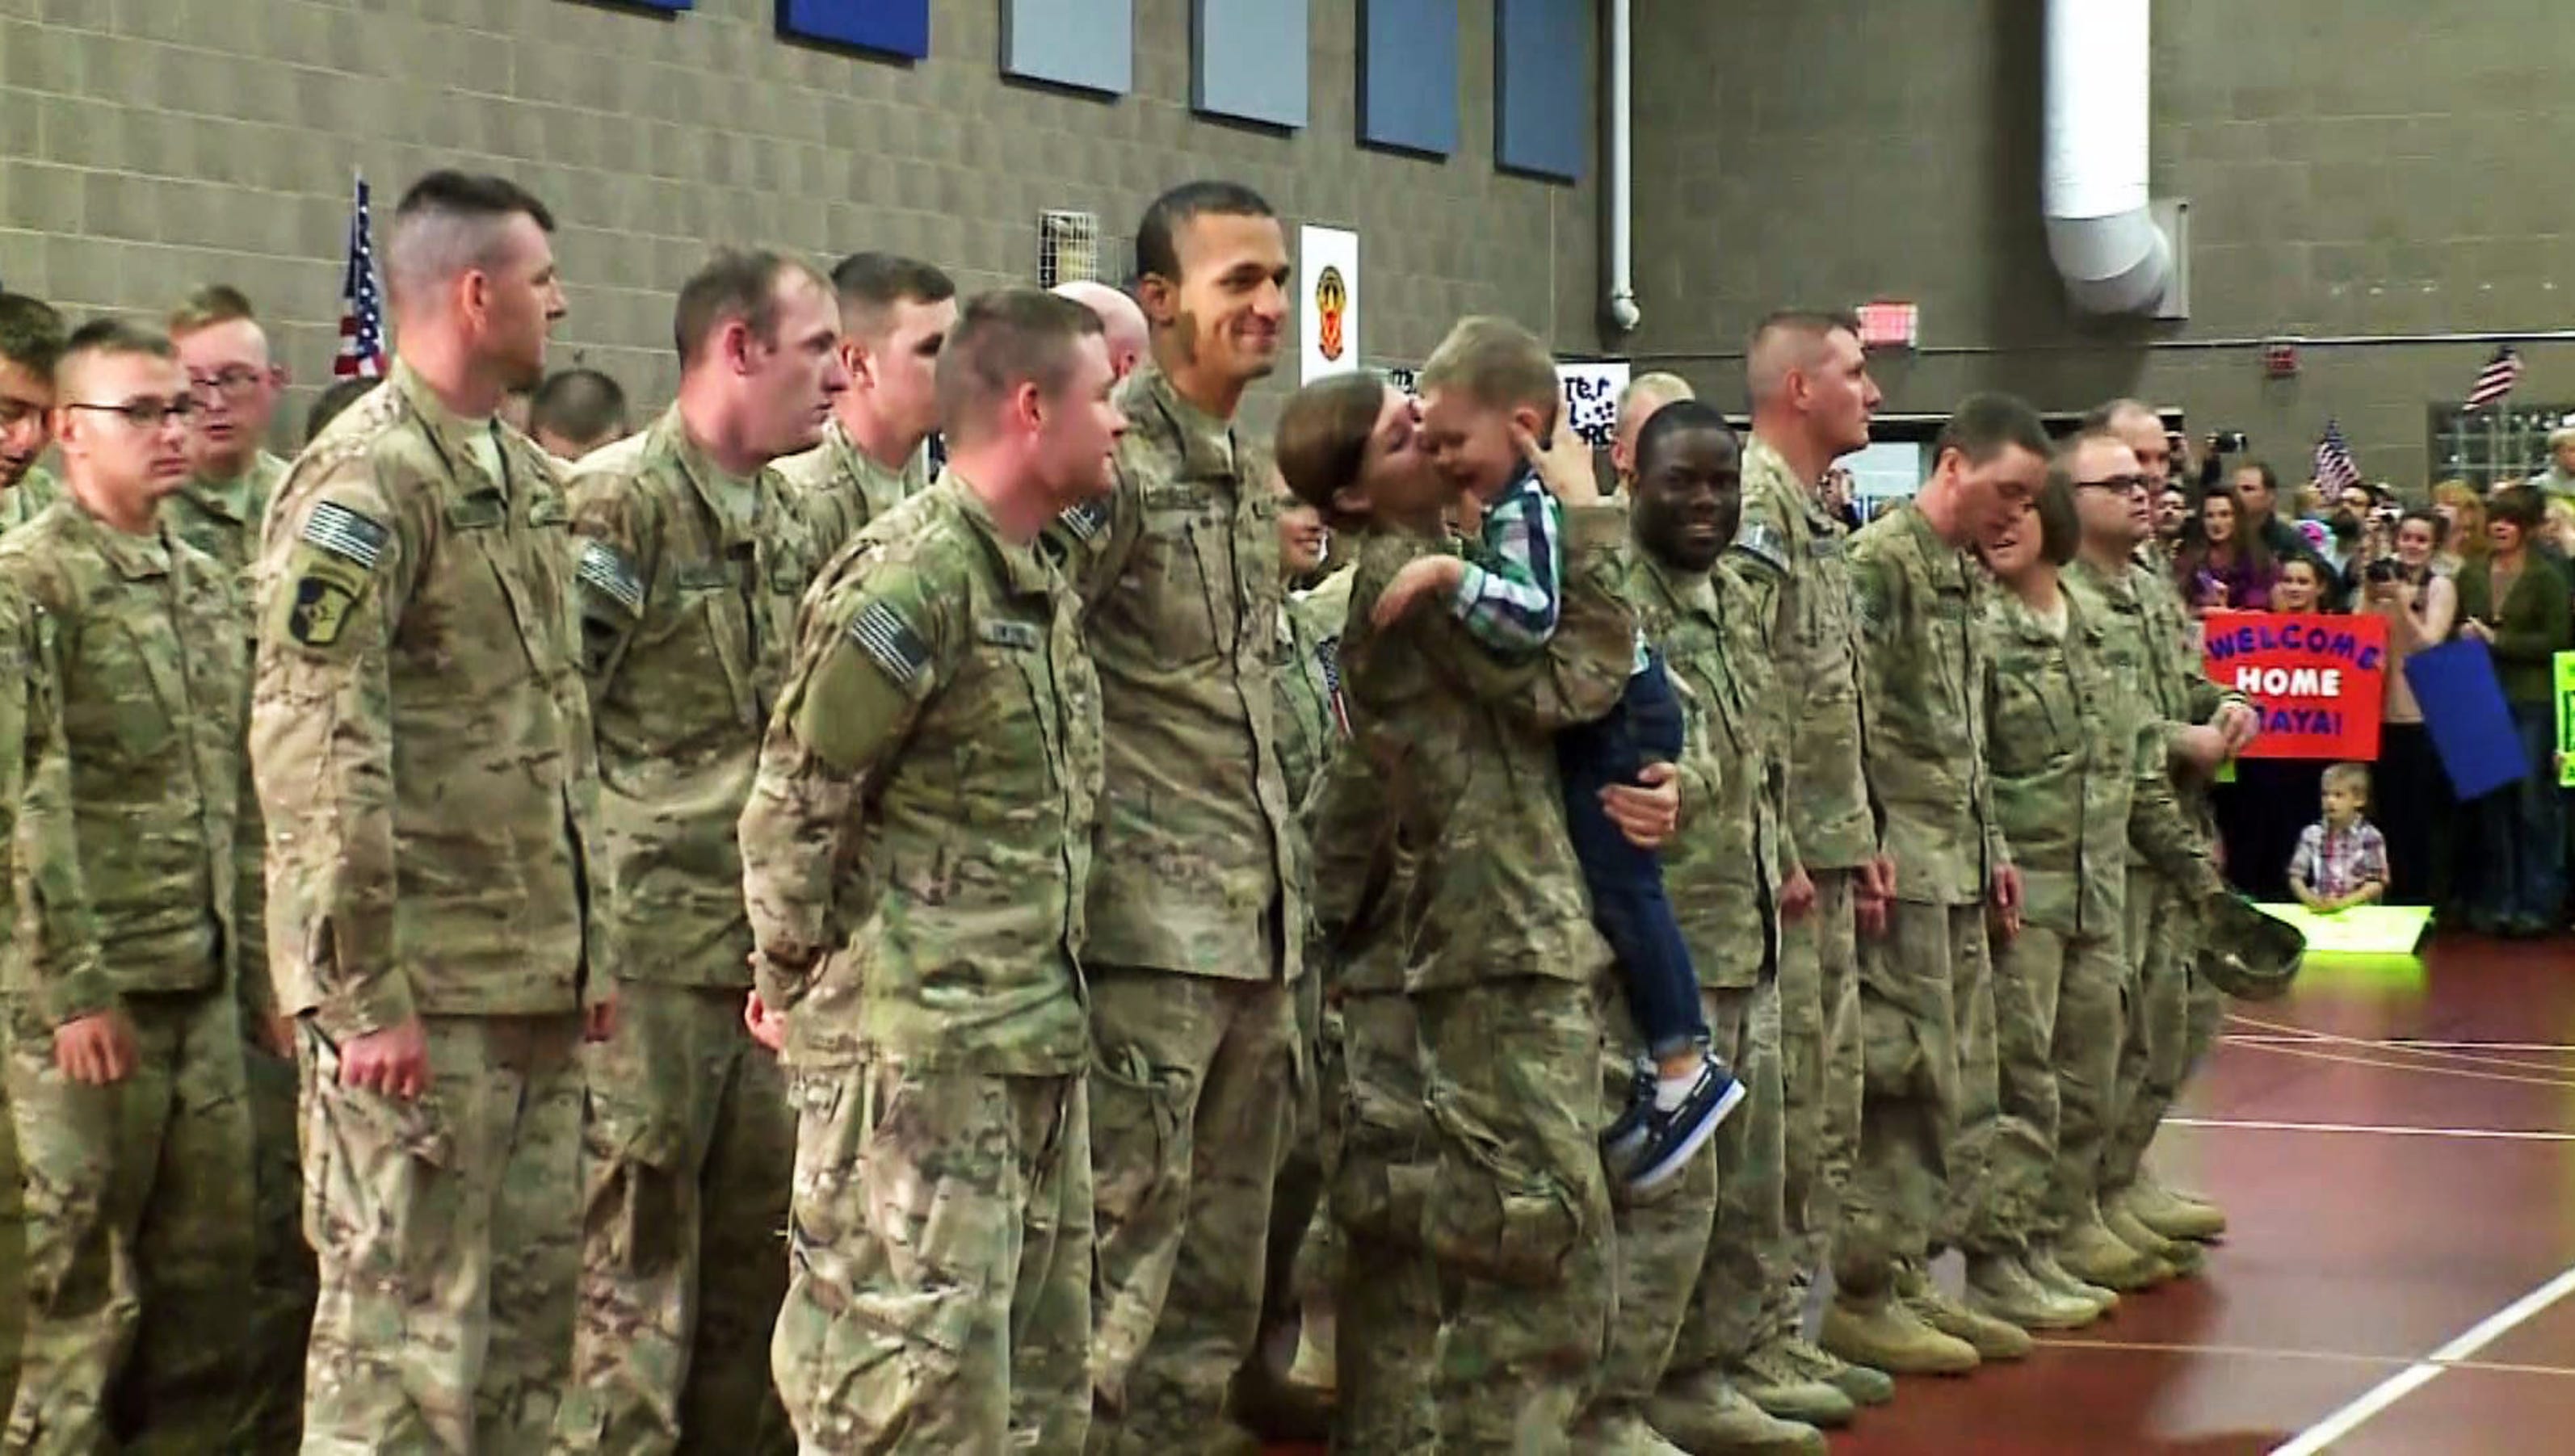 D'inoubliables photos de soldats qui retrouvent leur famille, après une longue absence 1410965143000-sodier-kid